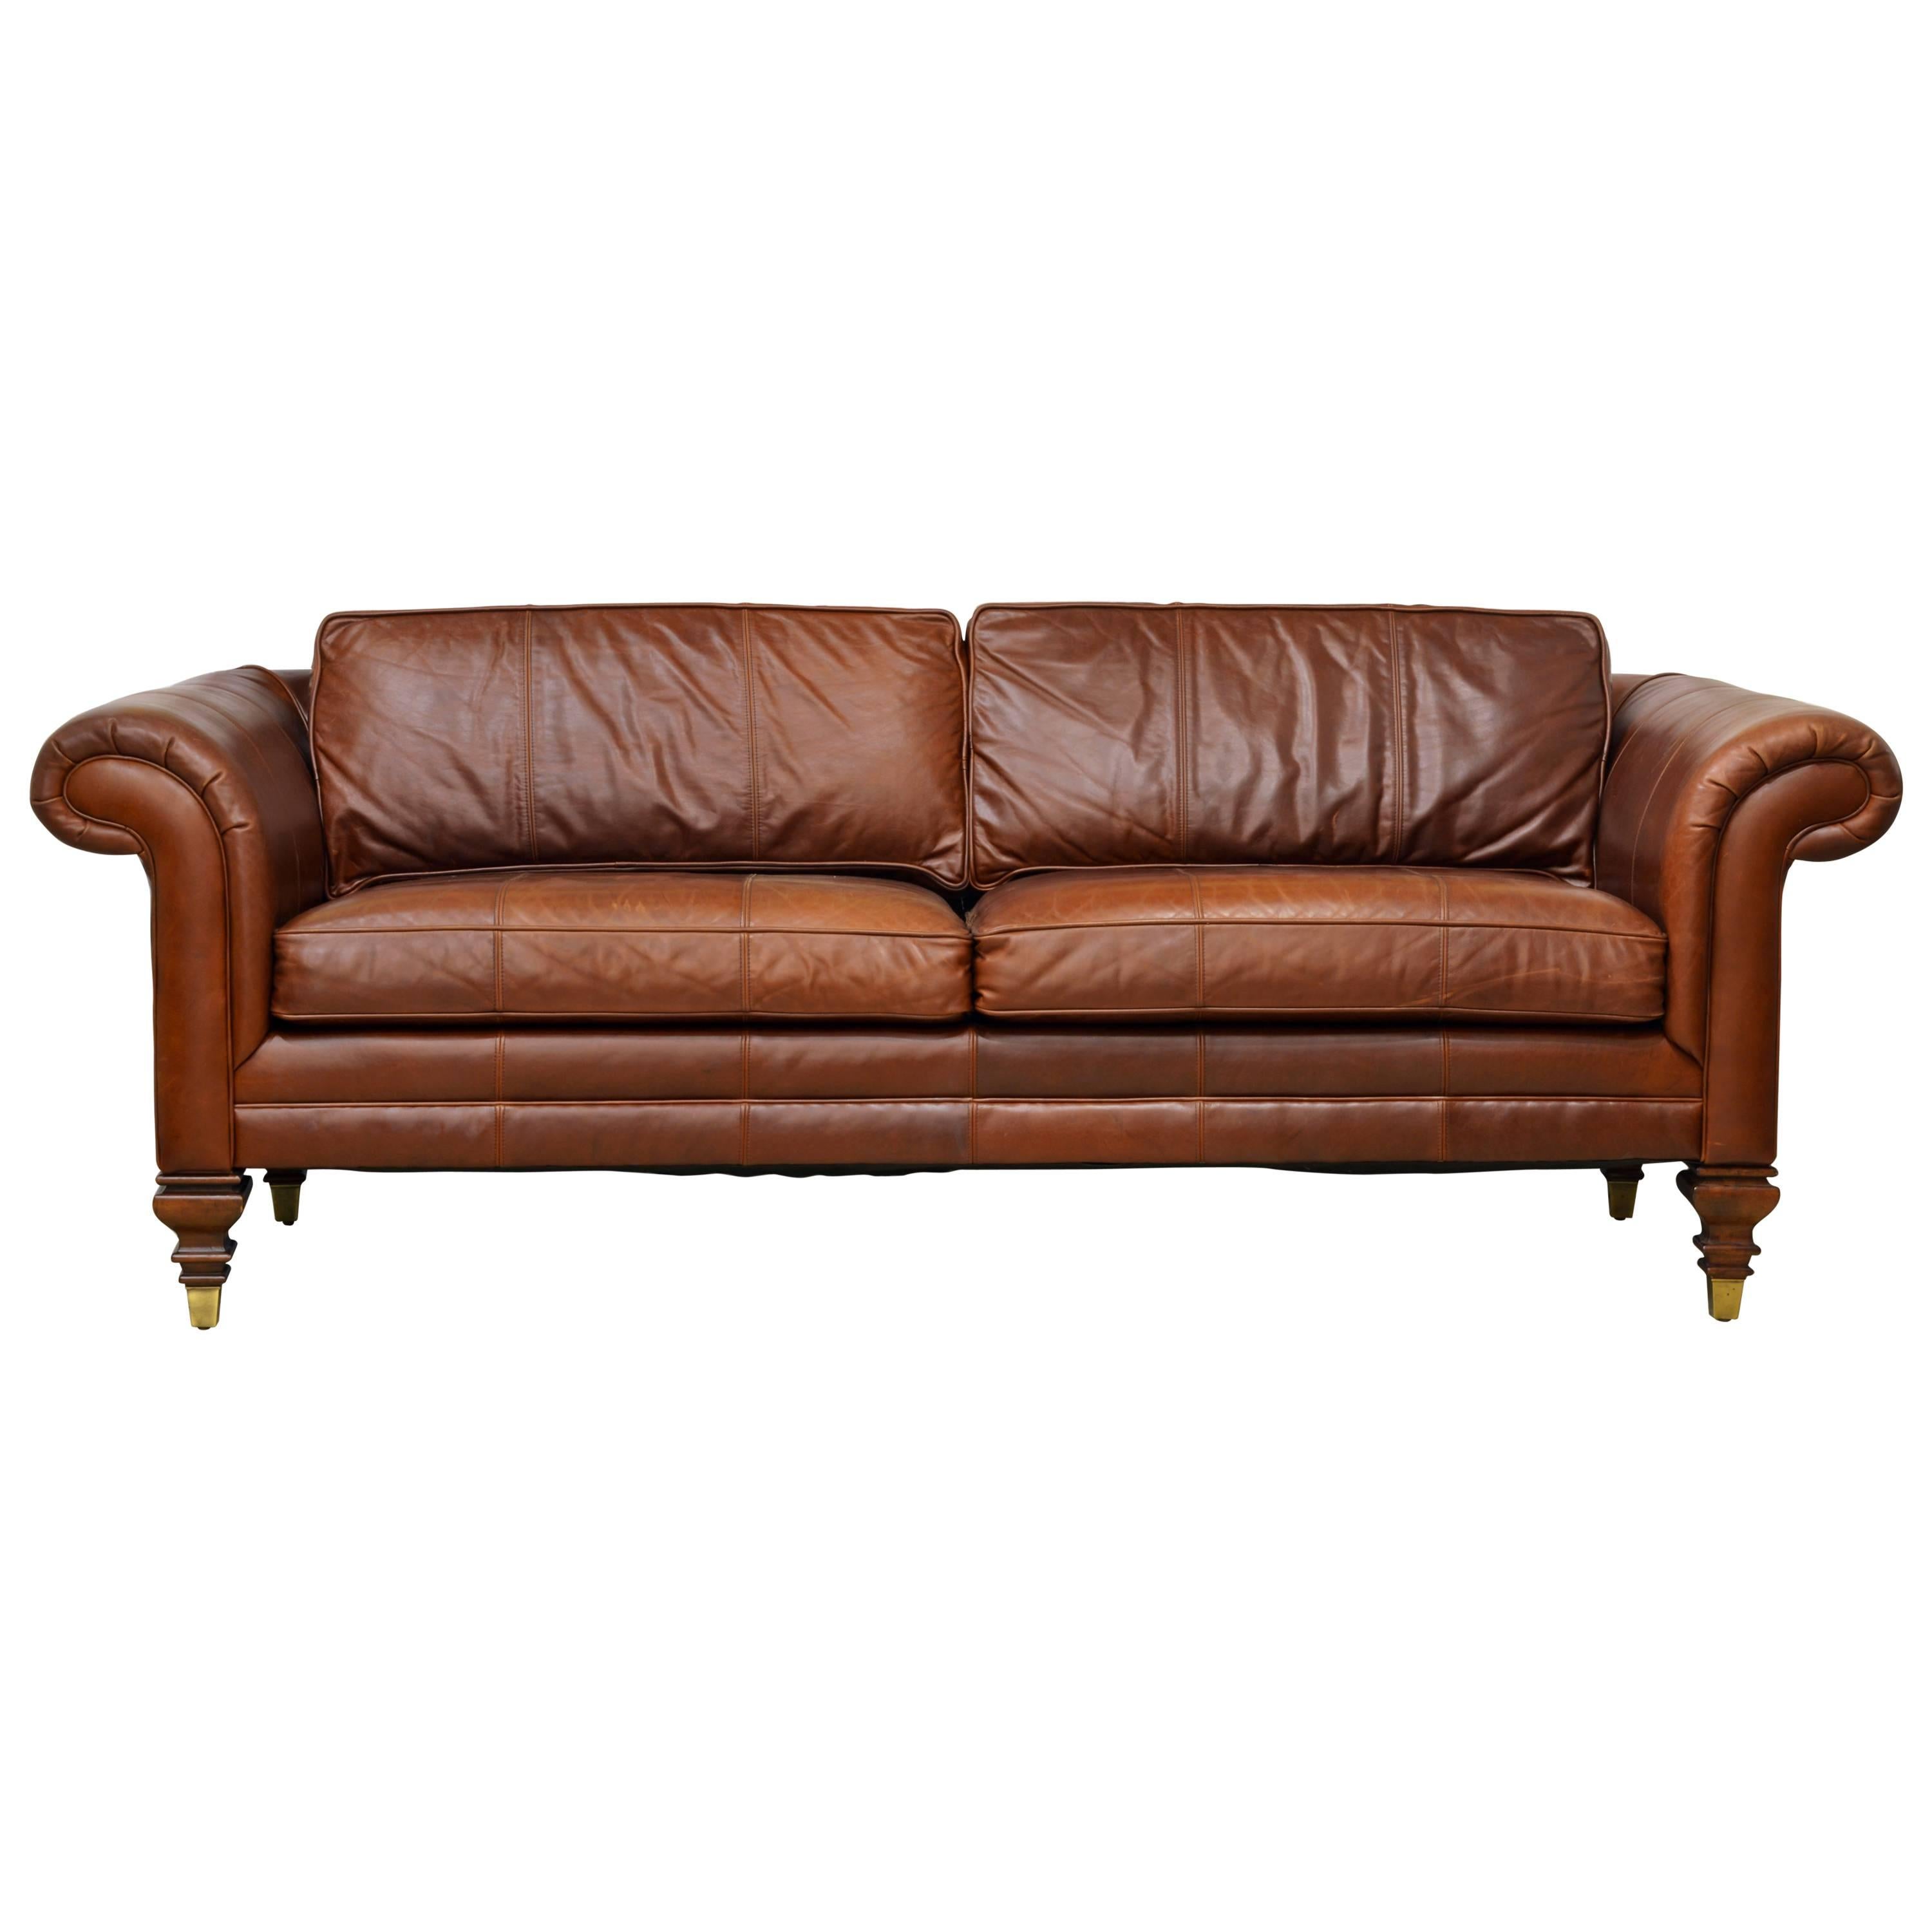 Ralph Lauren Couch Sale | website.jkuat.ac.ke